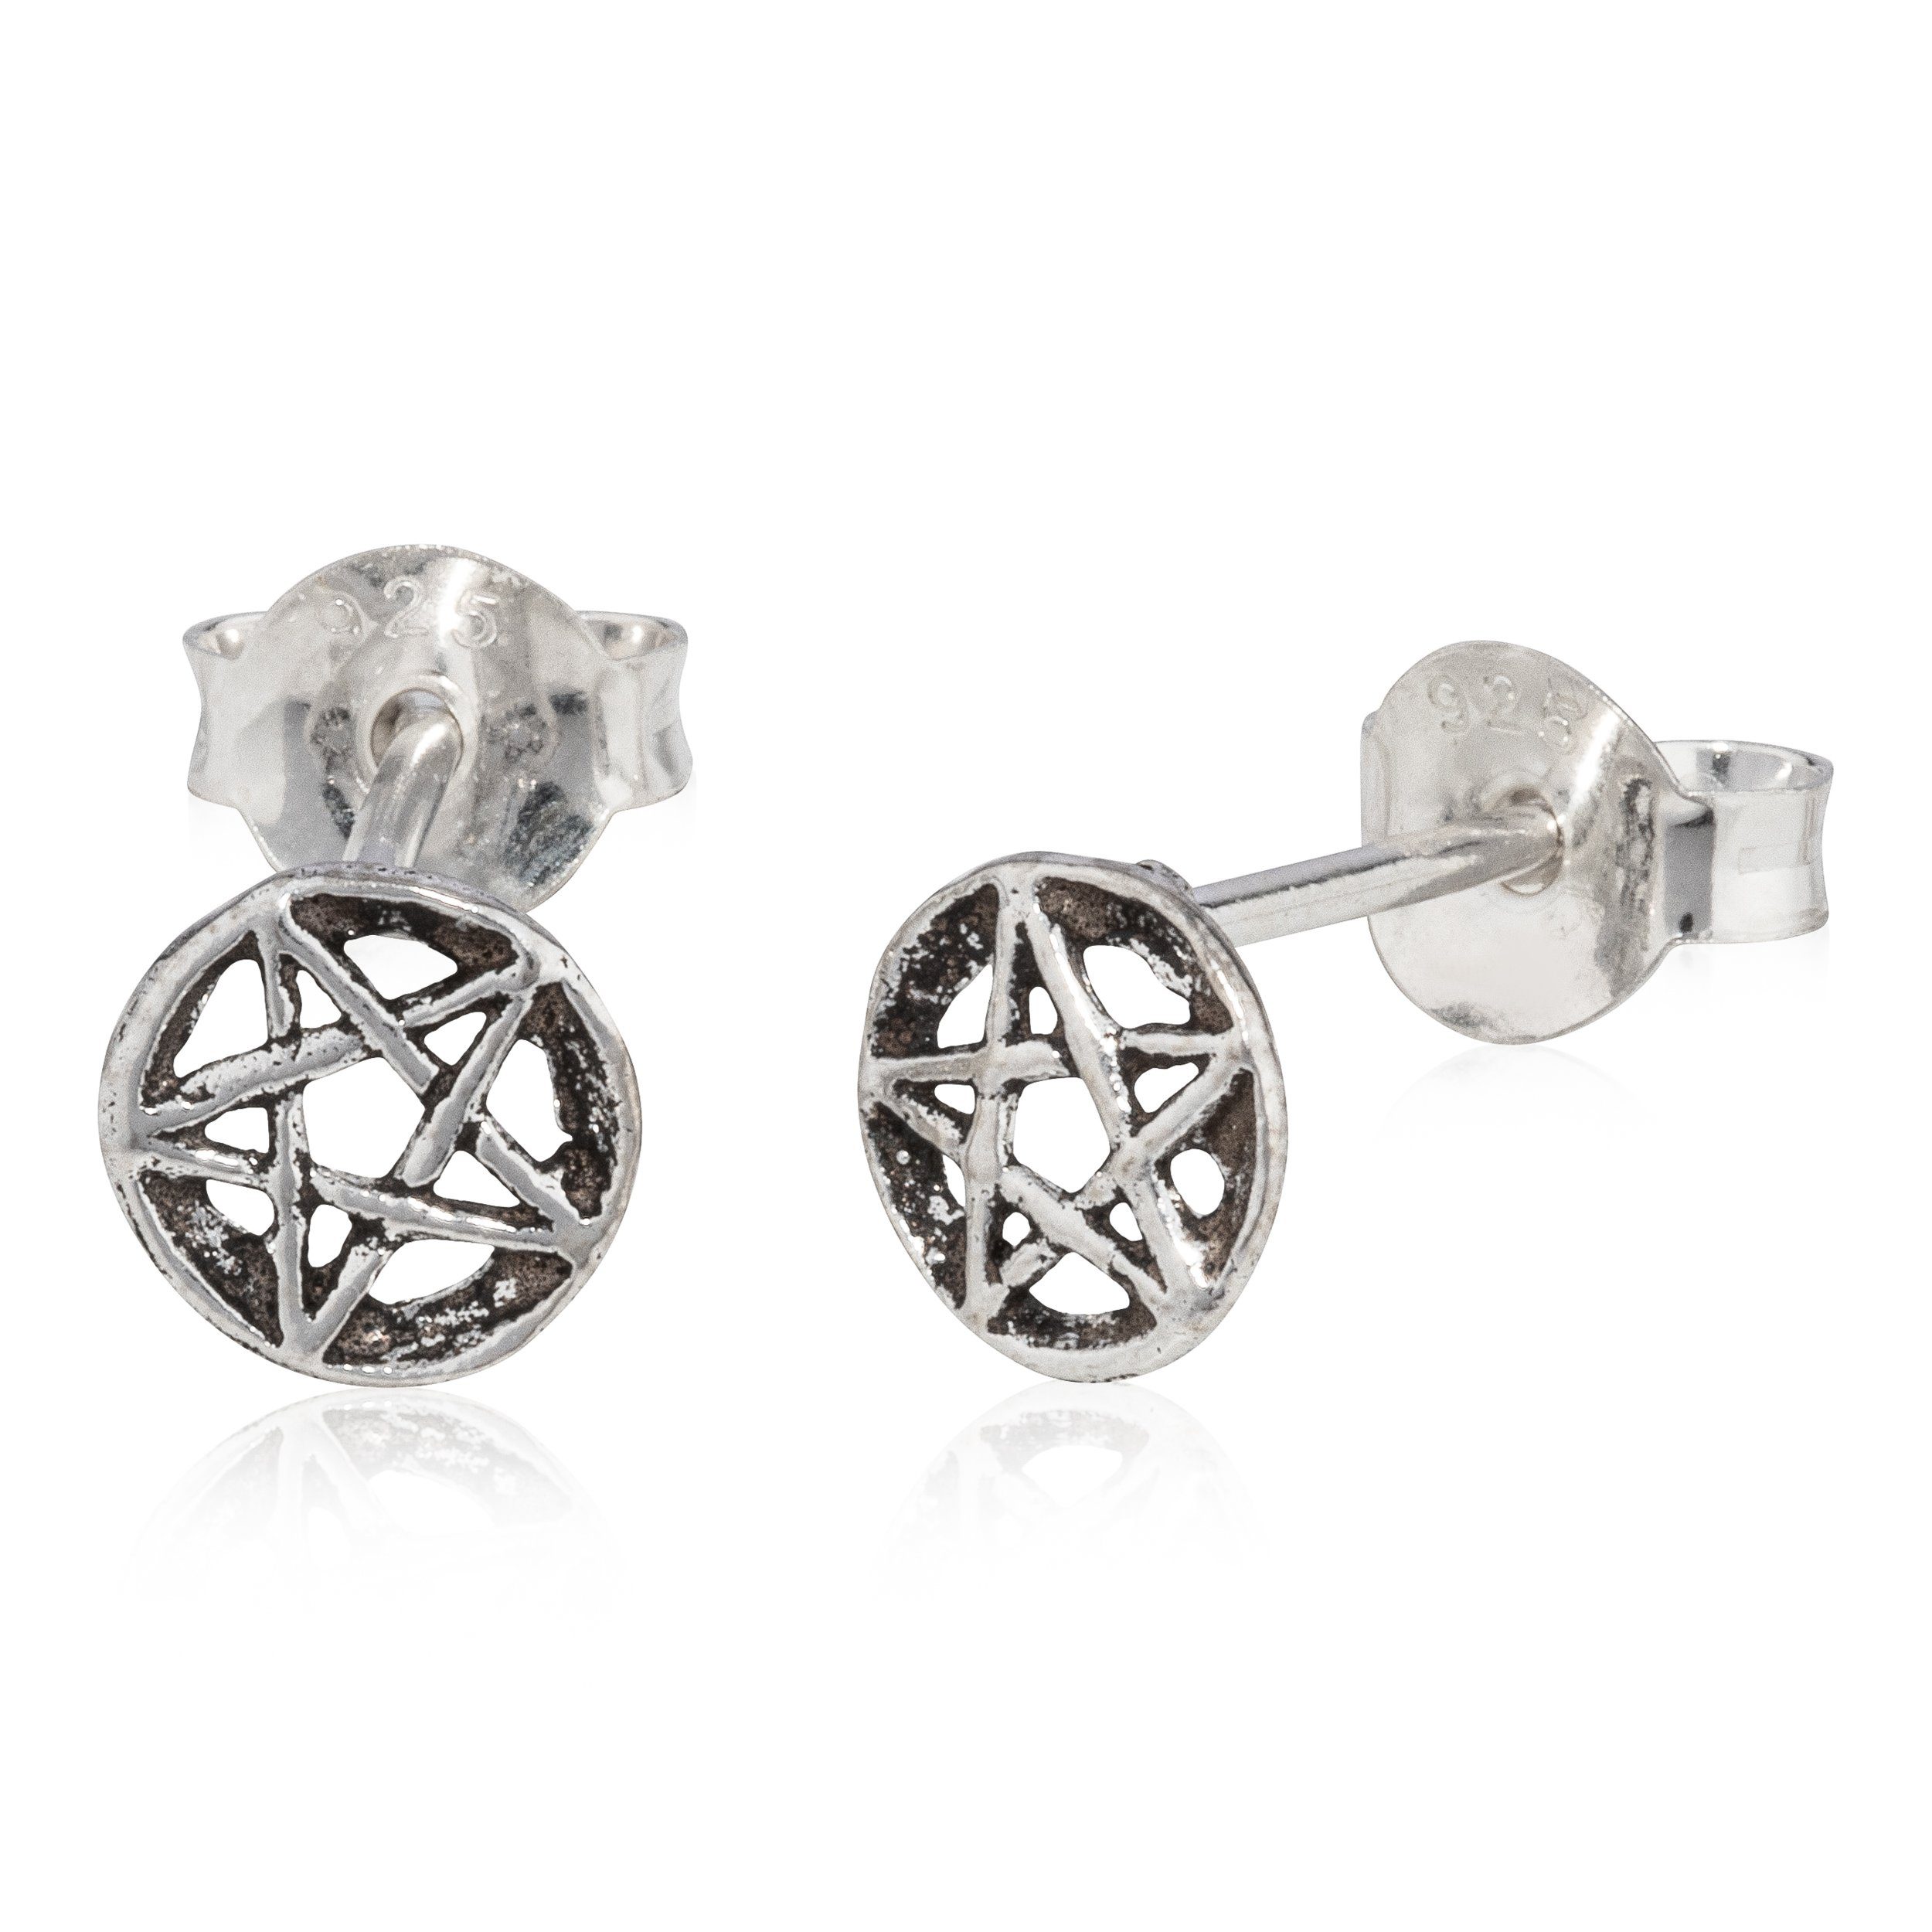 NKlaus Paar Ohrstecker Paar Pentagramm Ohrring 925 Silber Antik Oxidiert